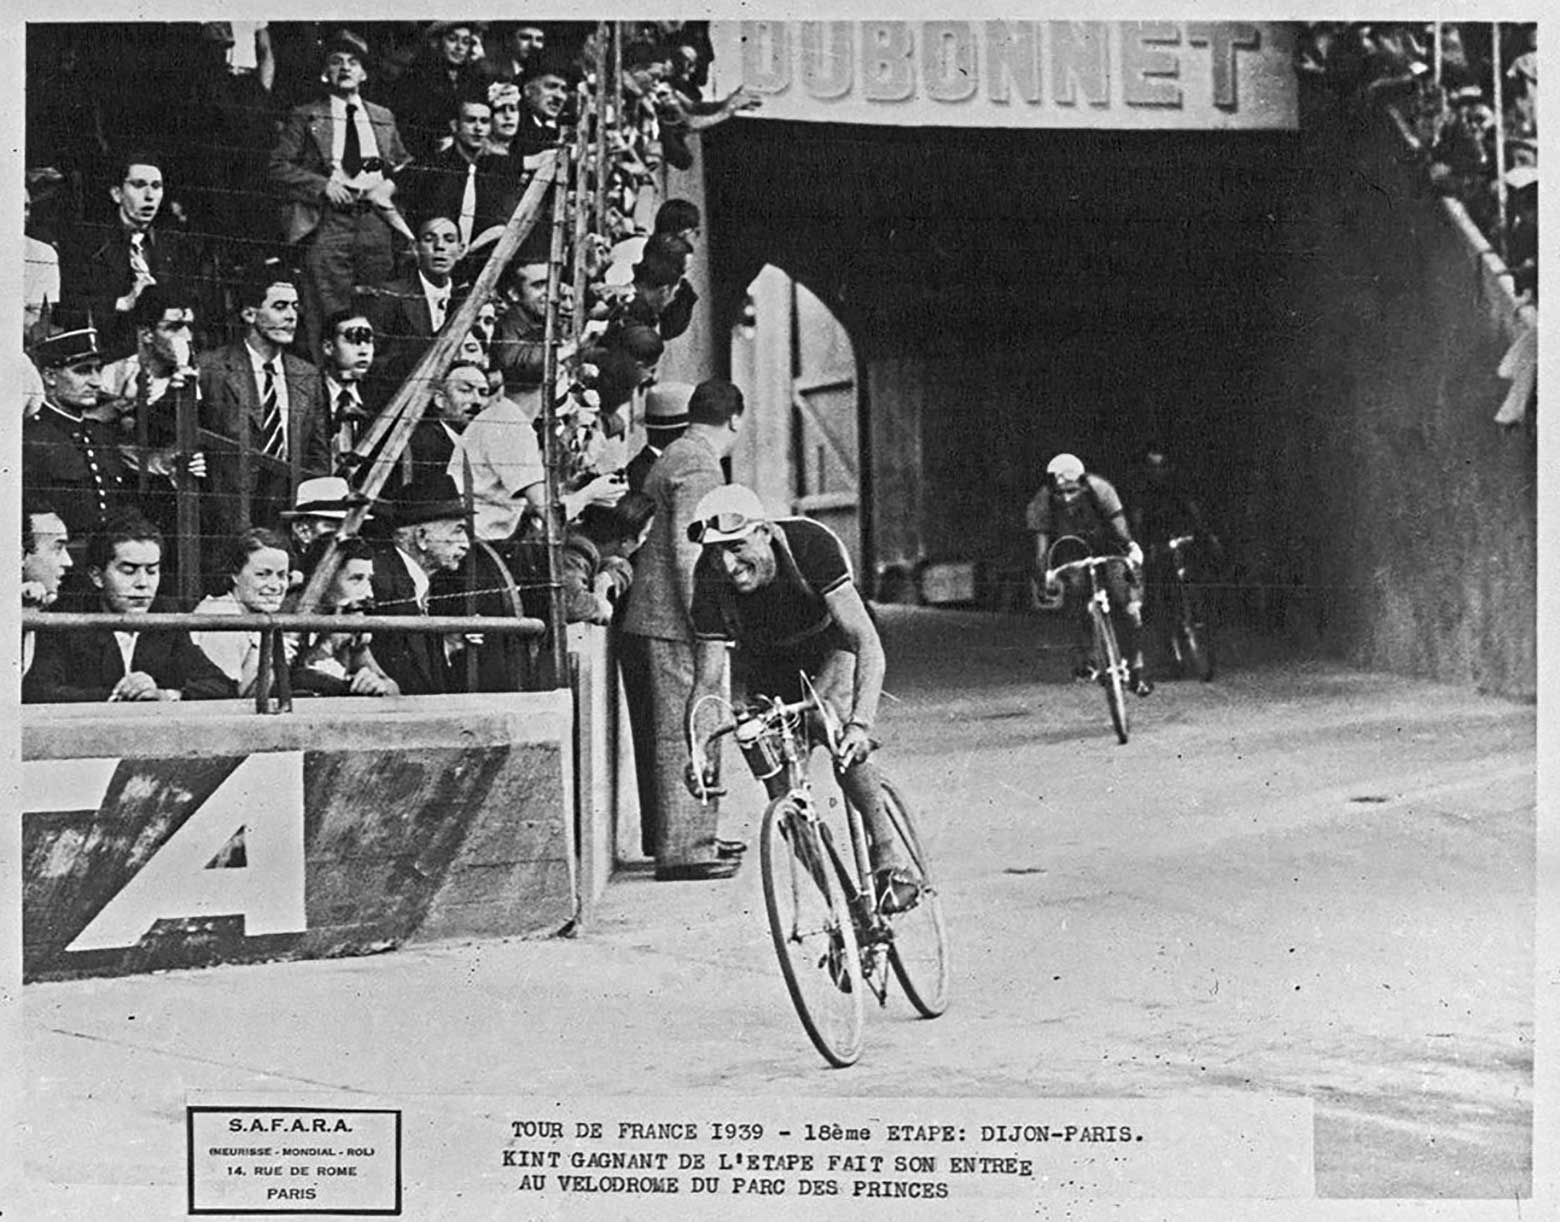 Marcel Kint - 1939 Tour de France Paris main image